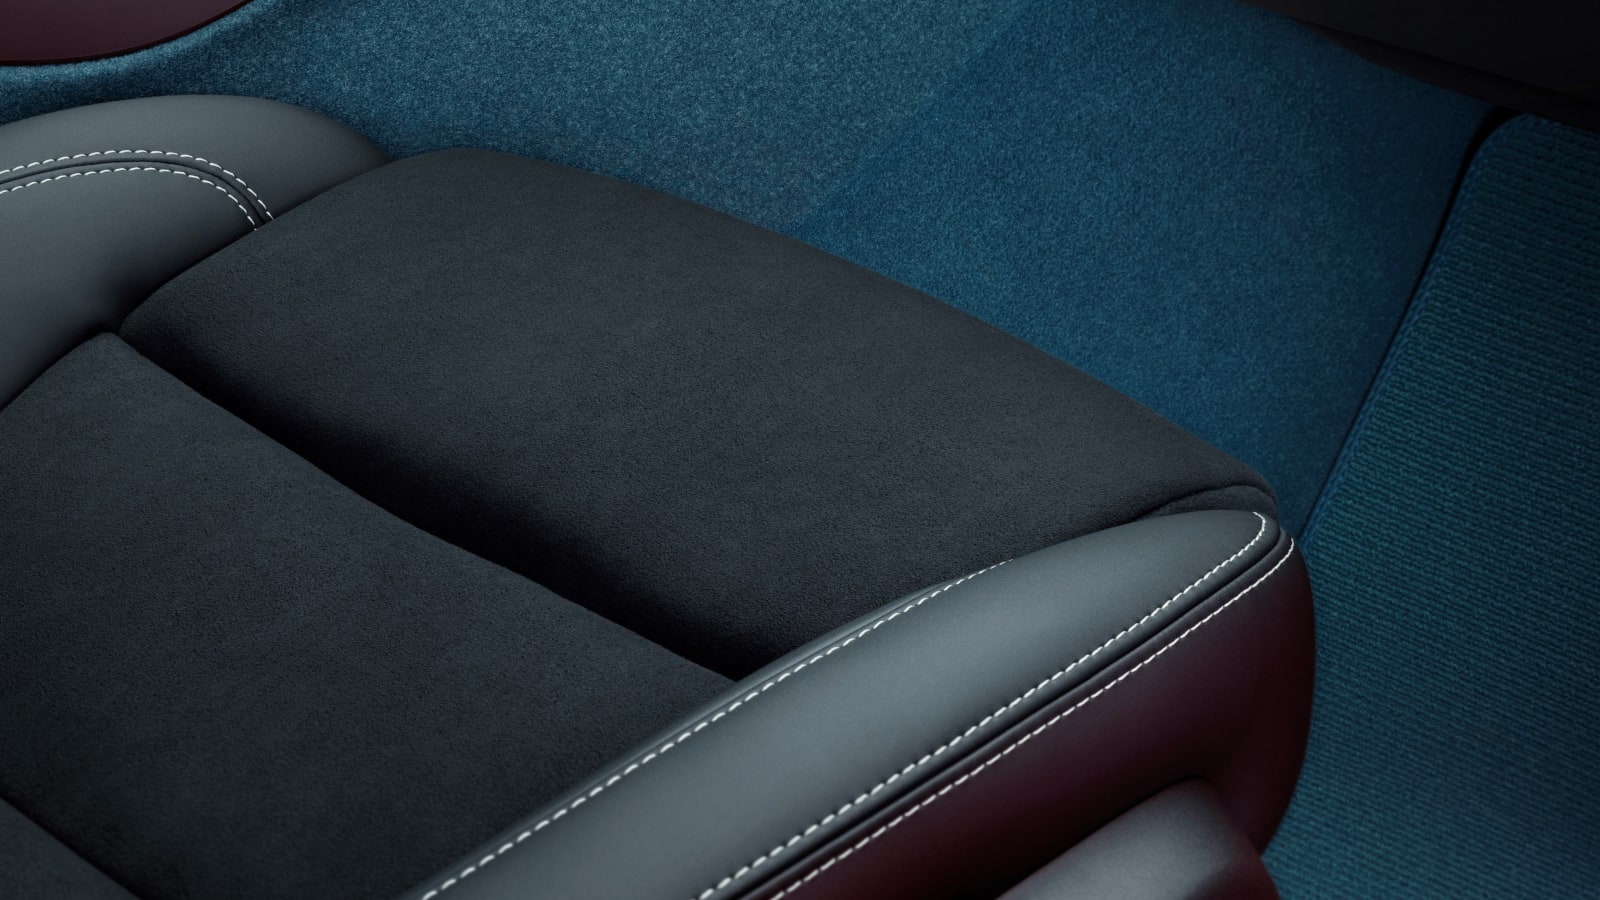 Volvo leather-free interiors